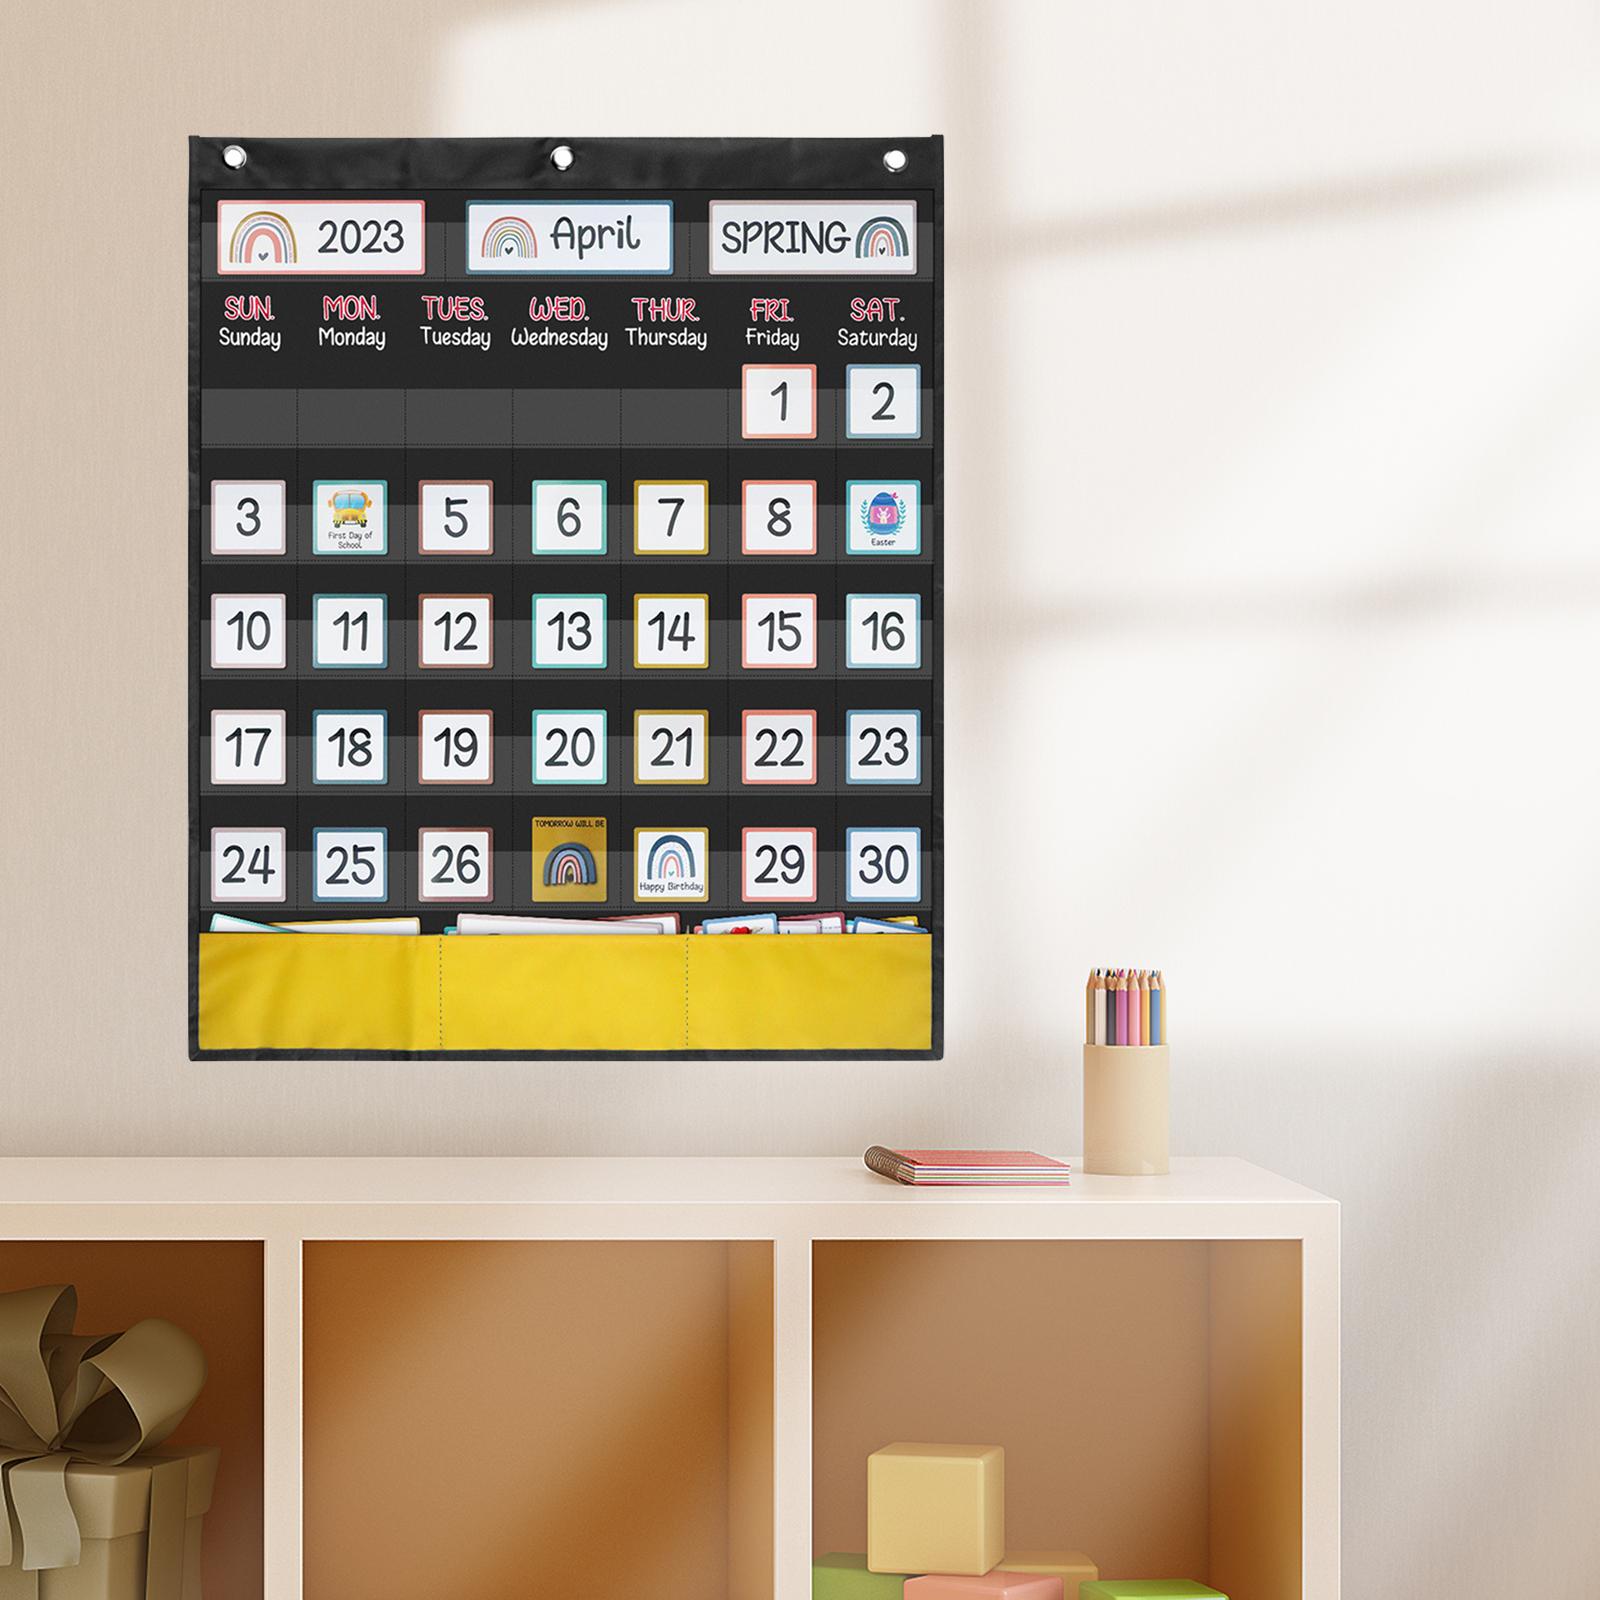 Classroom Monthly Calendar Pocket Chart, Classroom Organized Chart, Homeschool Supplies Teaching Calendar Calendar for Kids - image 1 of 8